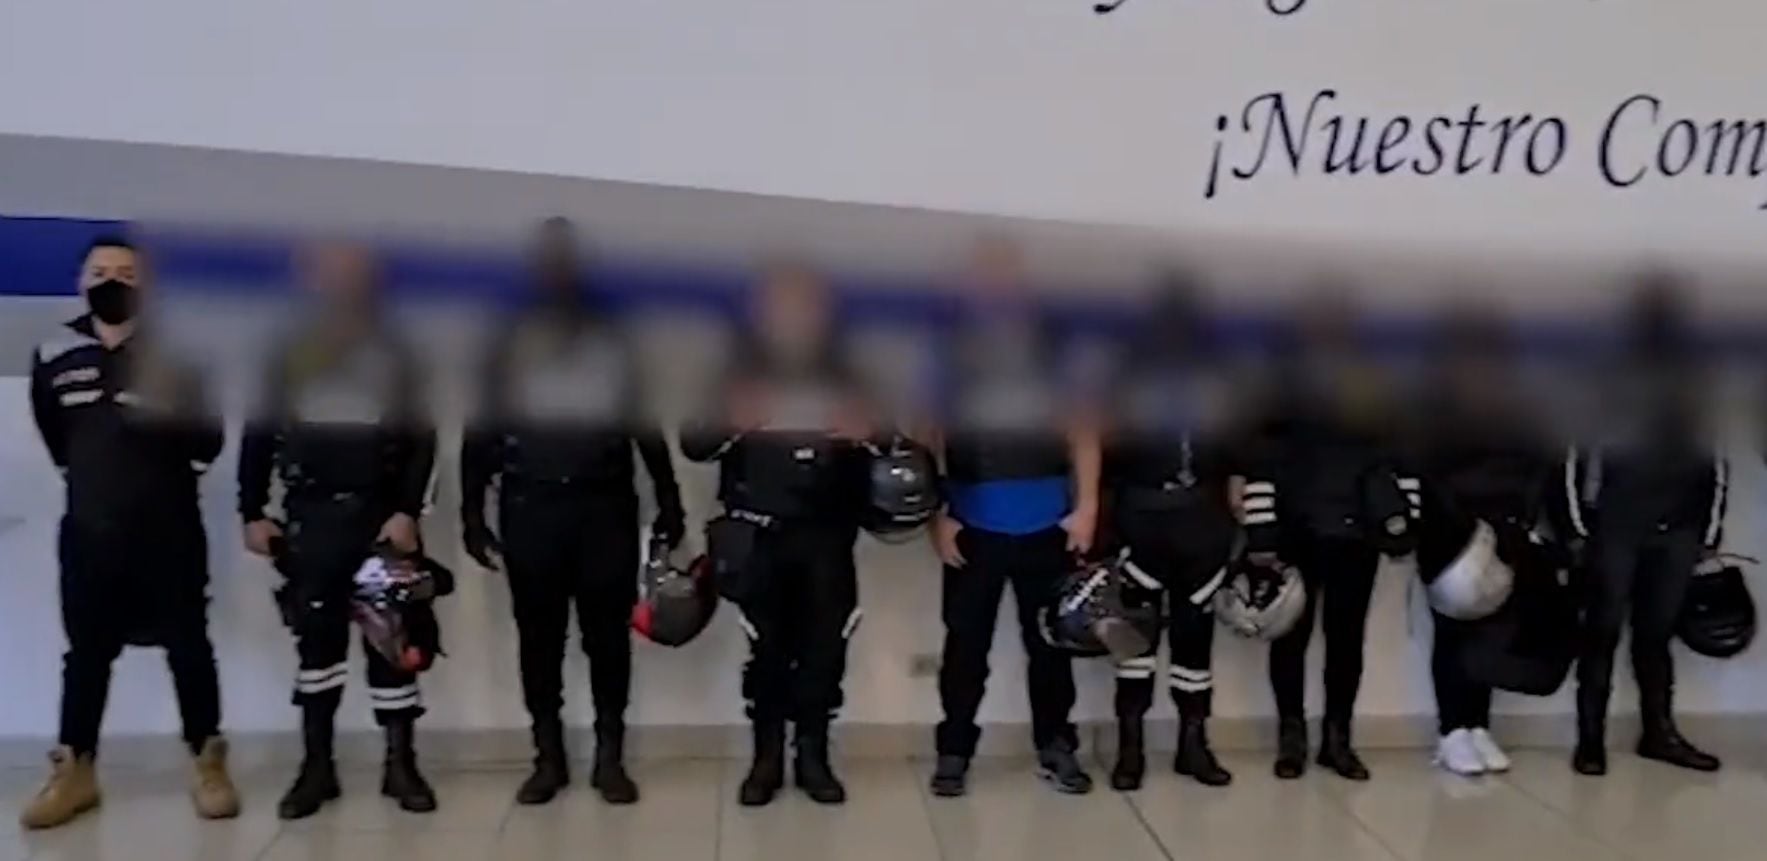 Diez ciudadanos vestidos de policías fueron detenidos en el centro de Quito; autoridades confirmaron que no forman parte de la institución